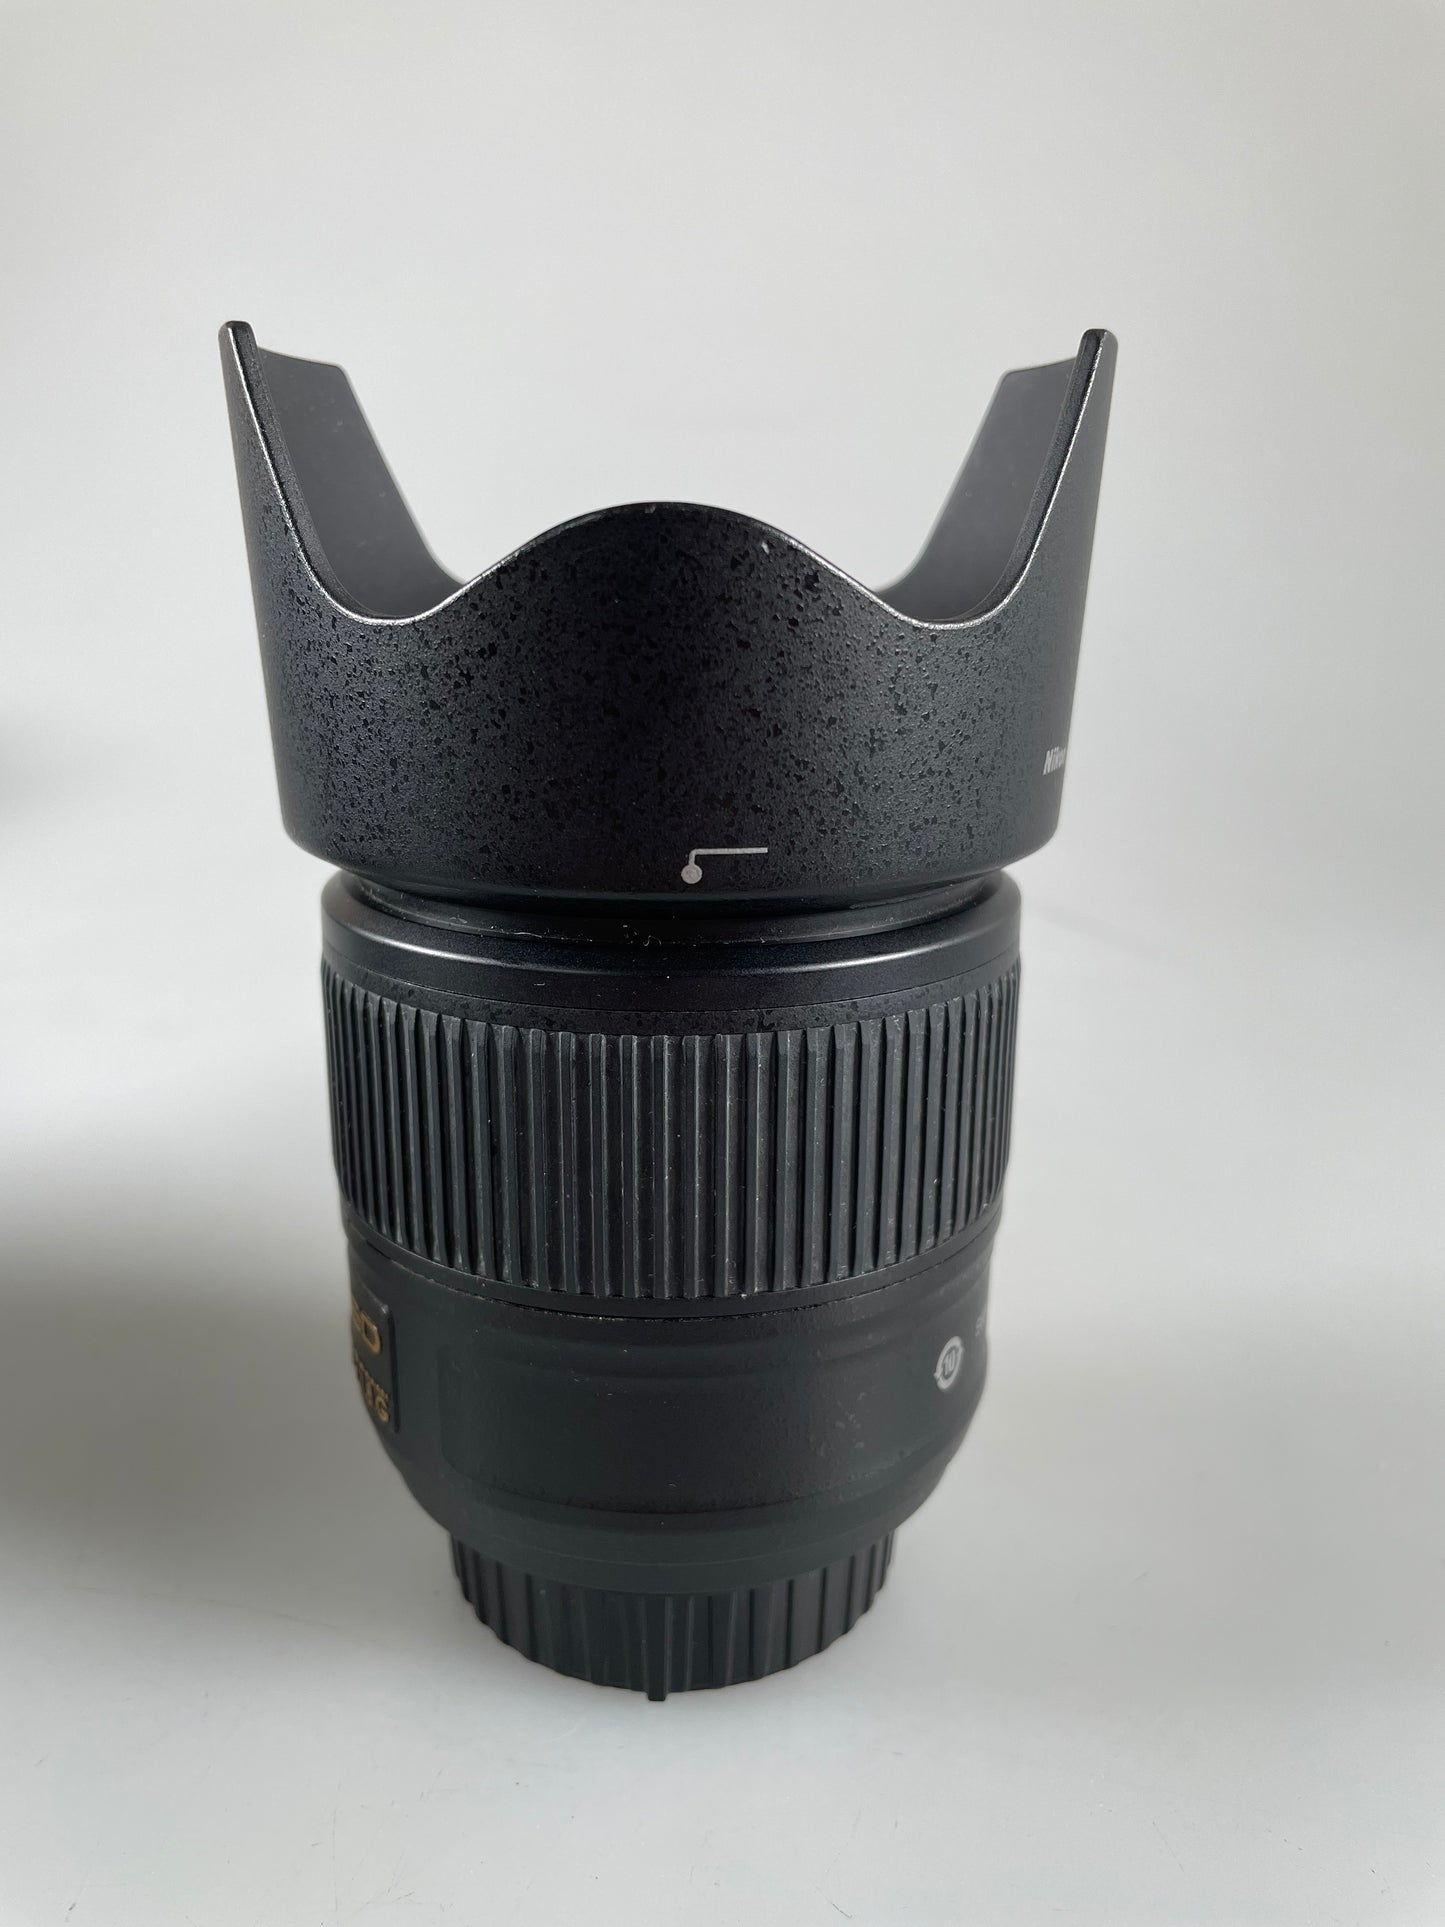 Nikon FX 35mm f/1.8 G digital camera lens